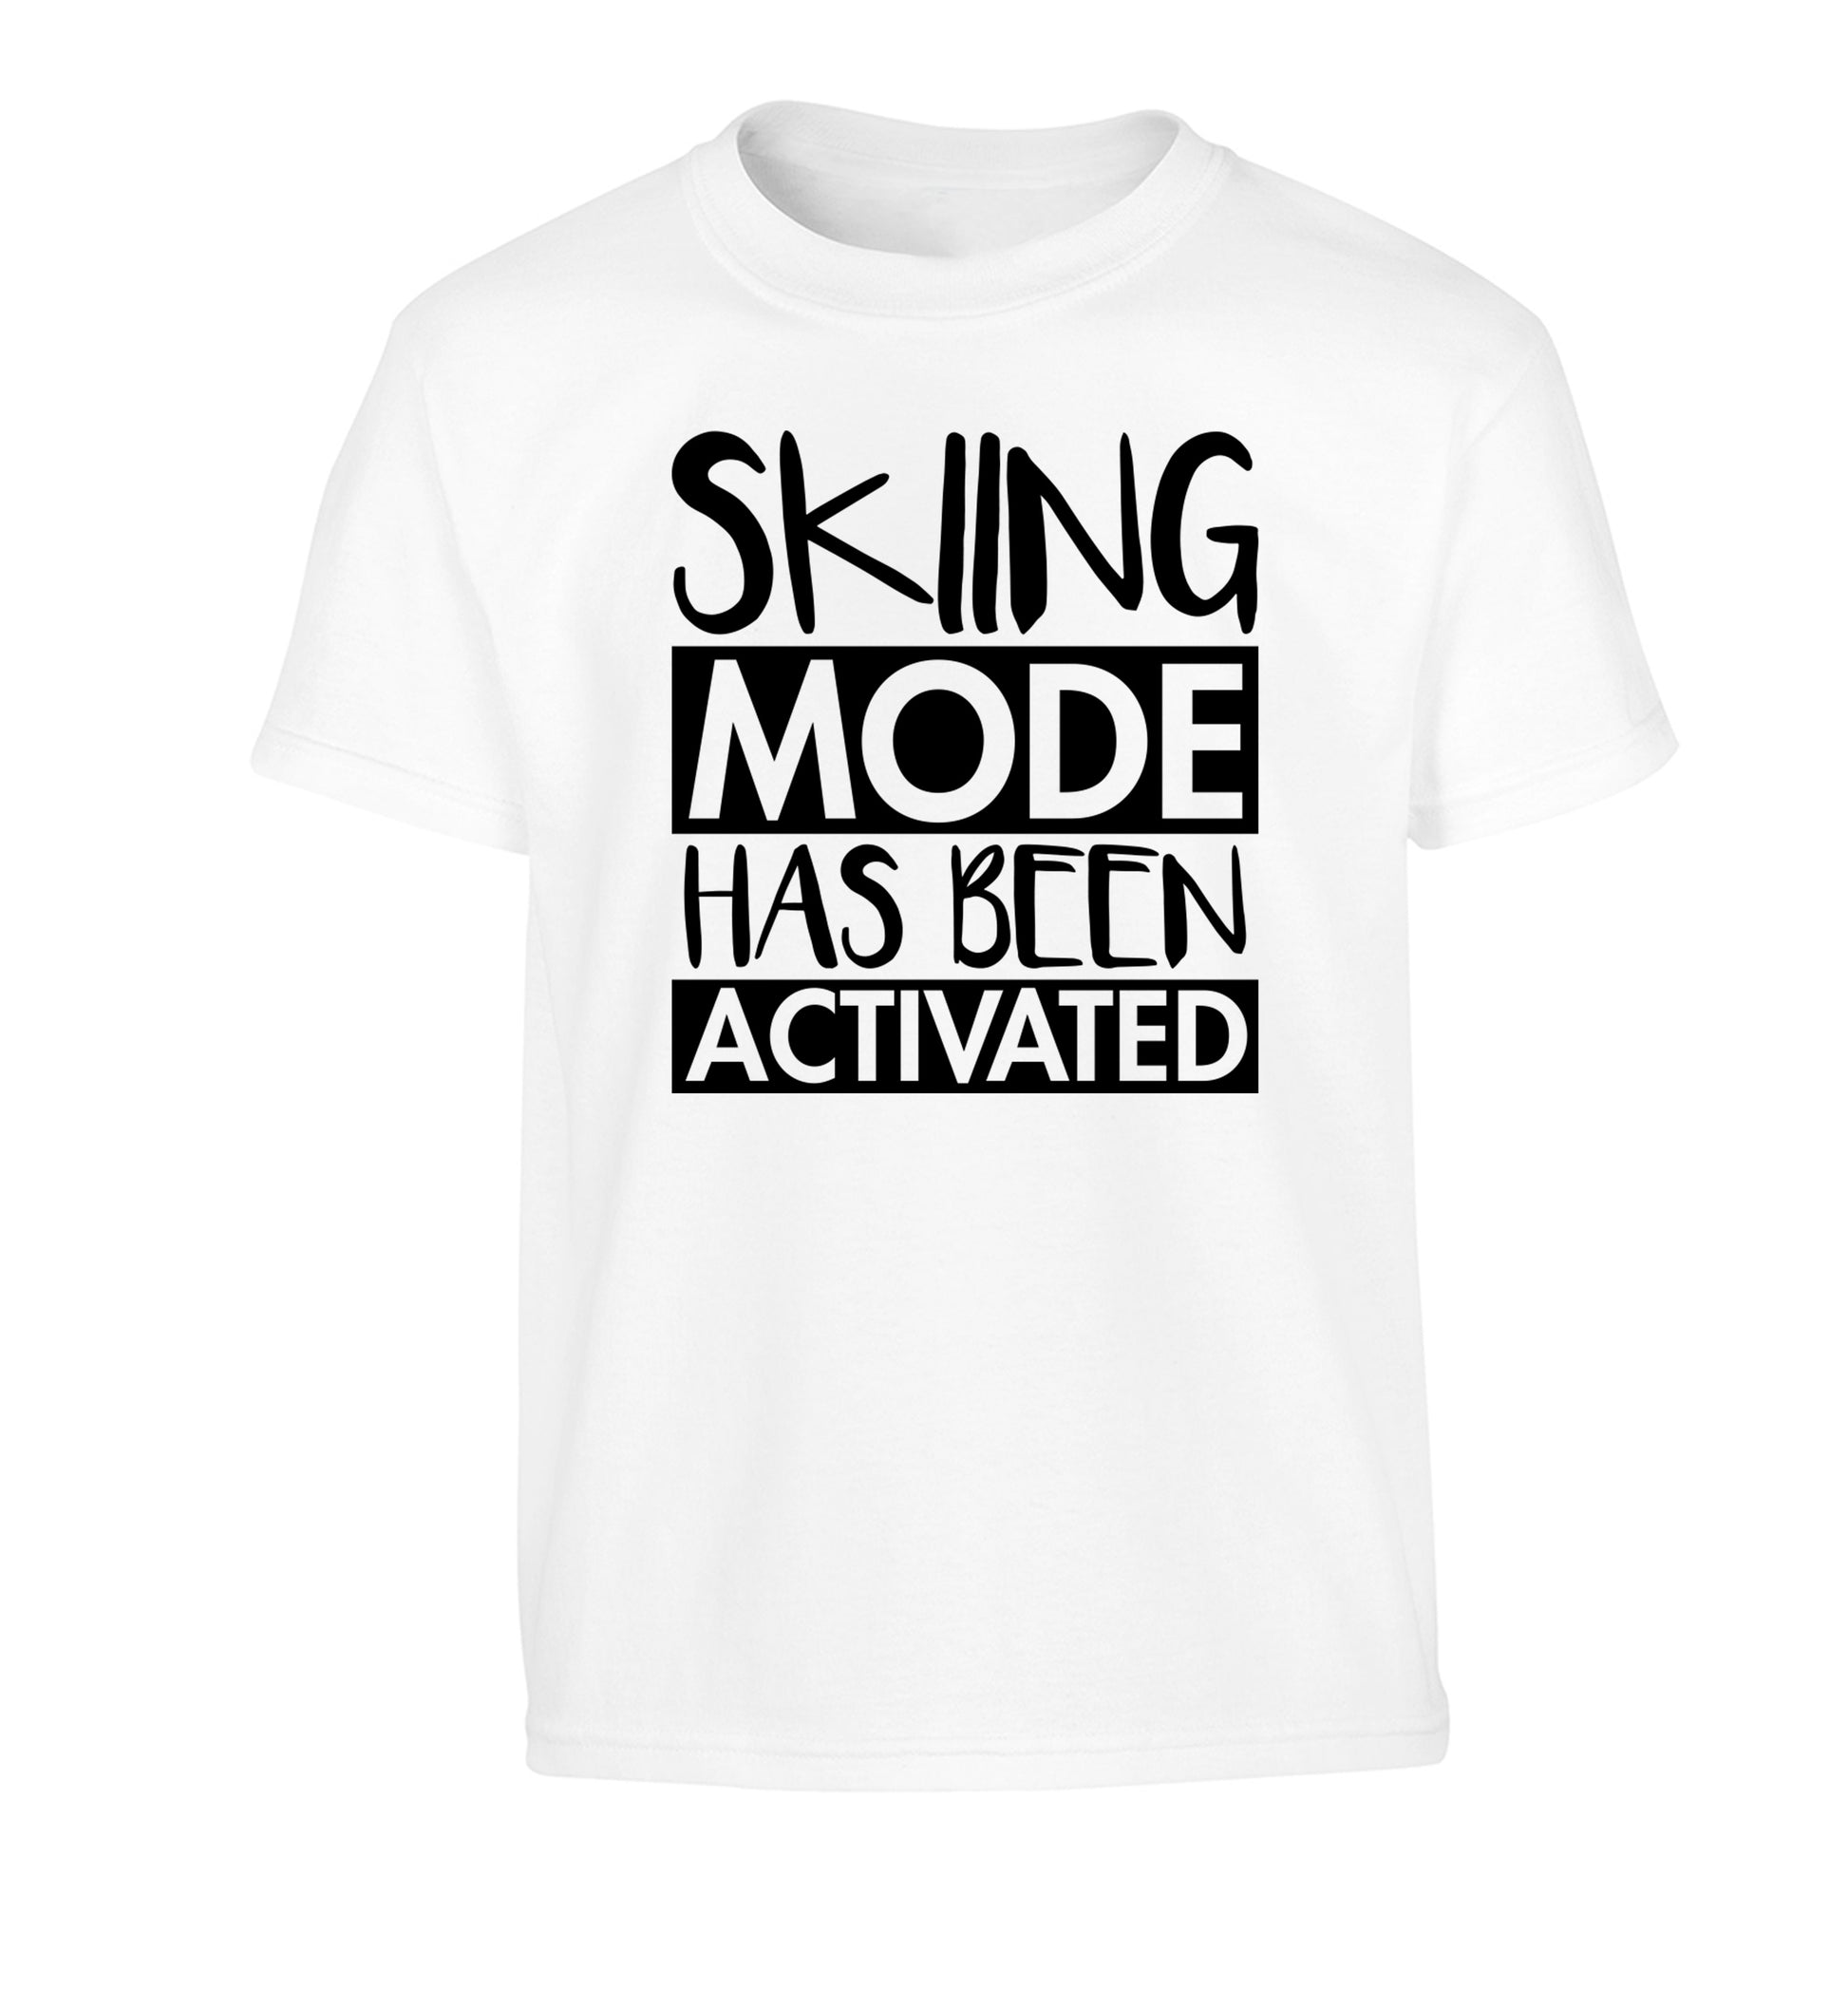 Skiing mode activated Children's white Tshirt 12-14 Years